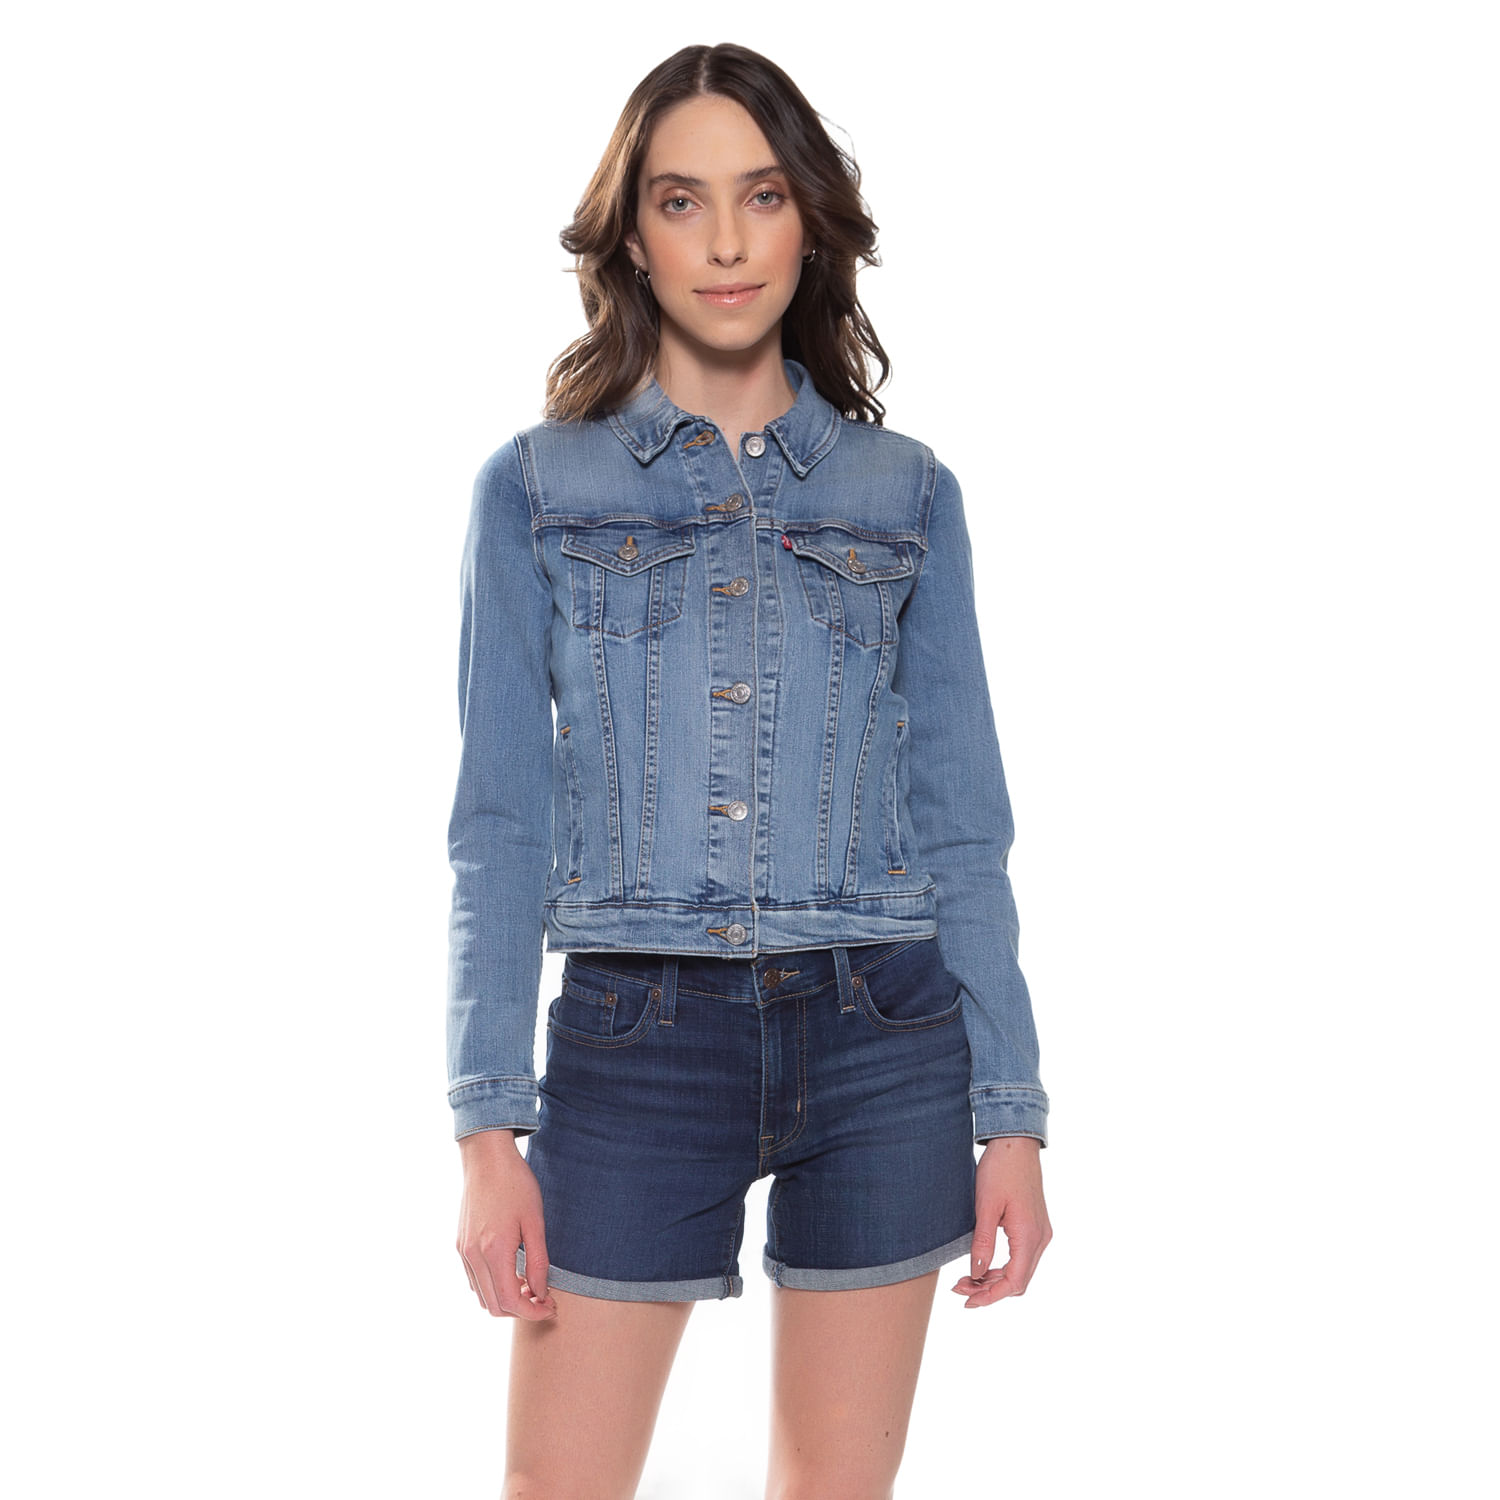 jaqueta jeans feminina levis